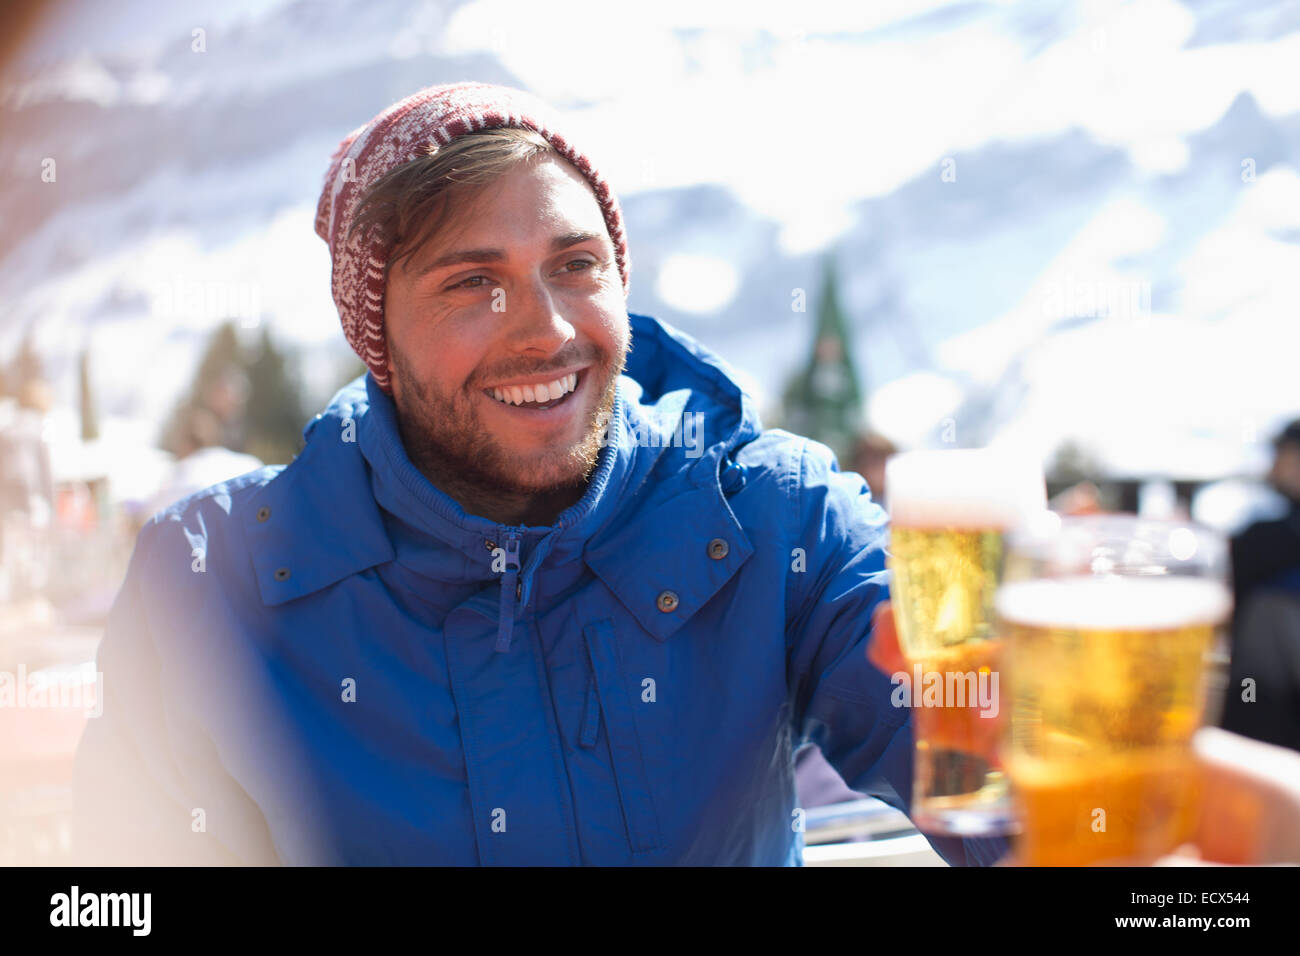 Smiling man dans des vêtements chauds de boire une bière en plein air Banque D'Images